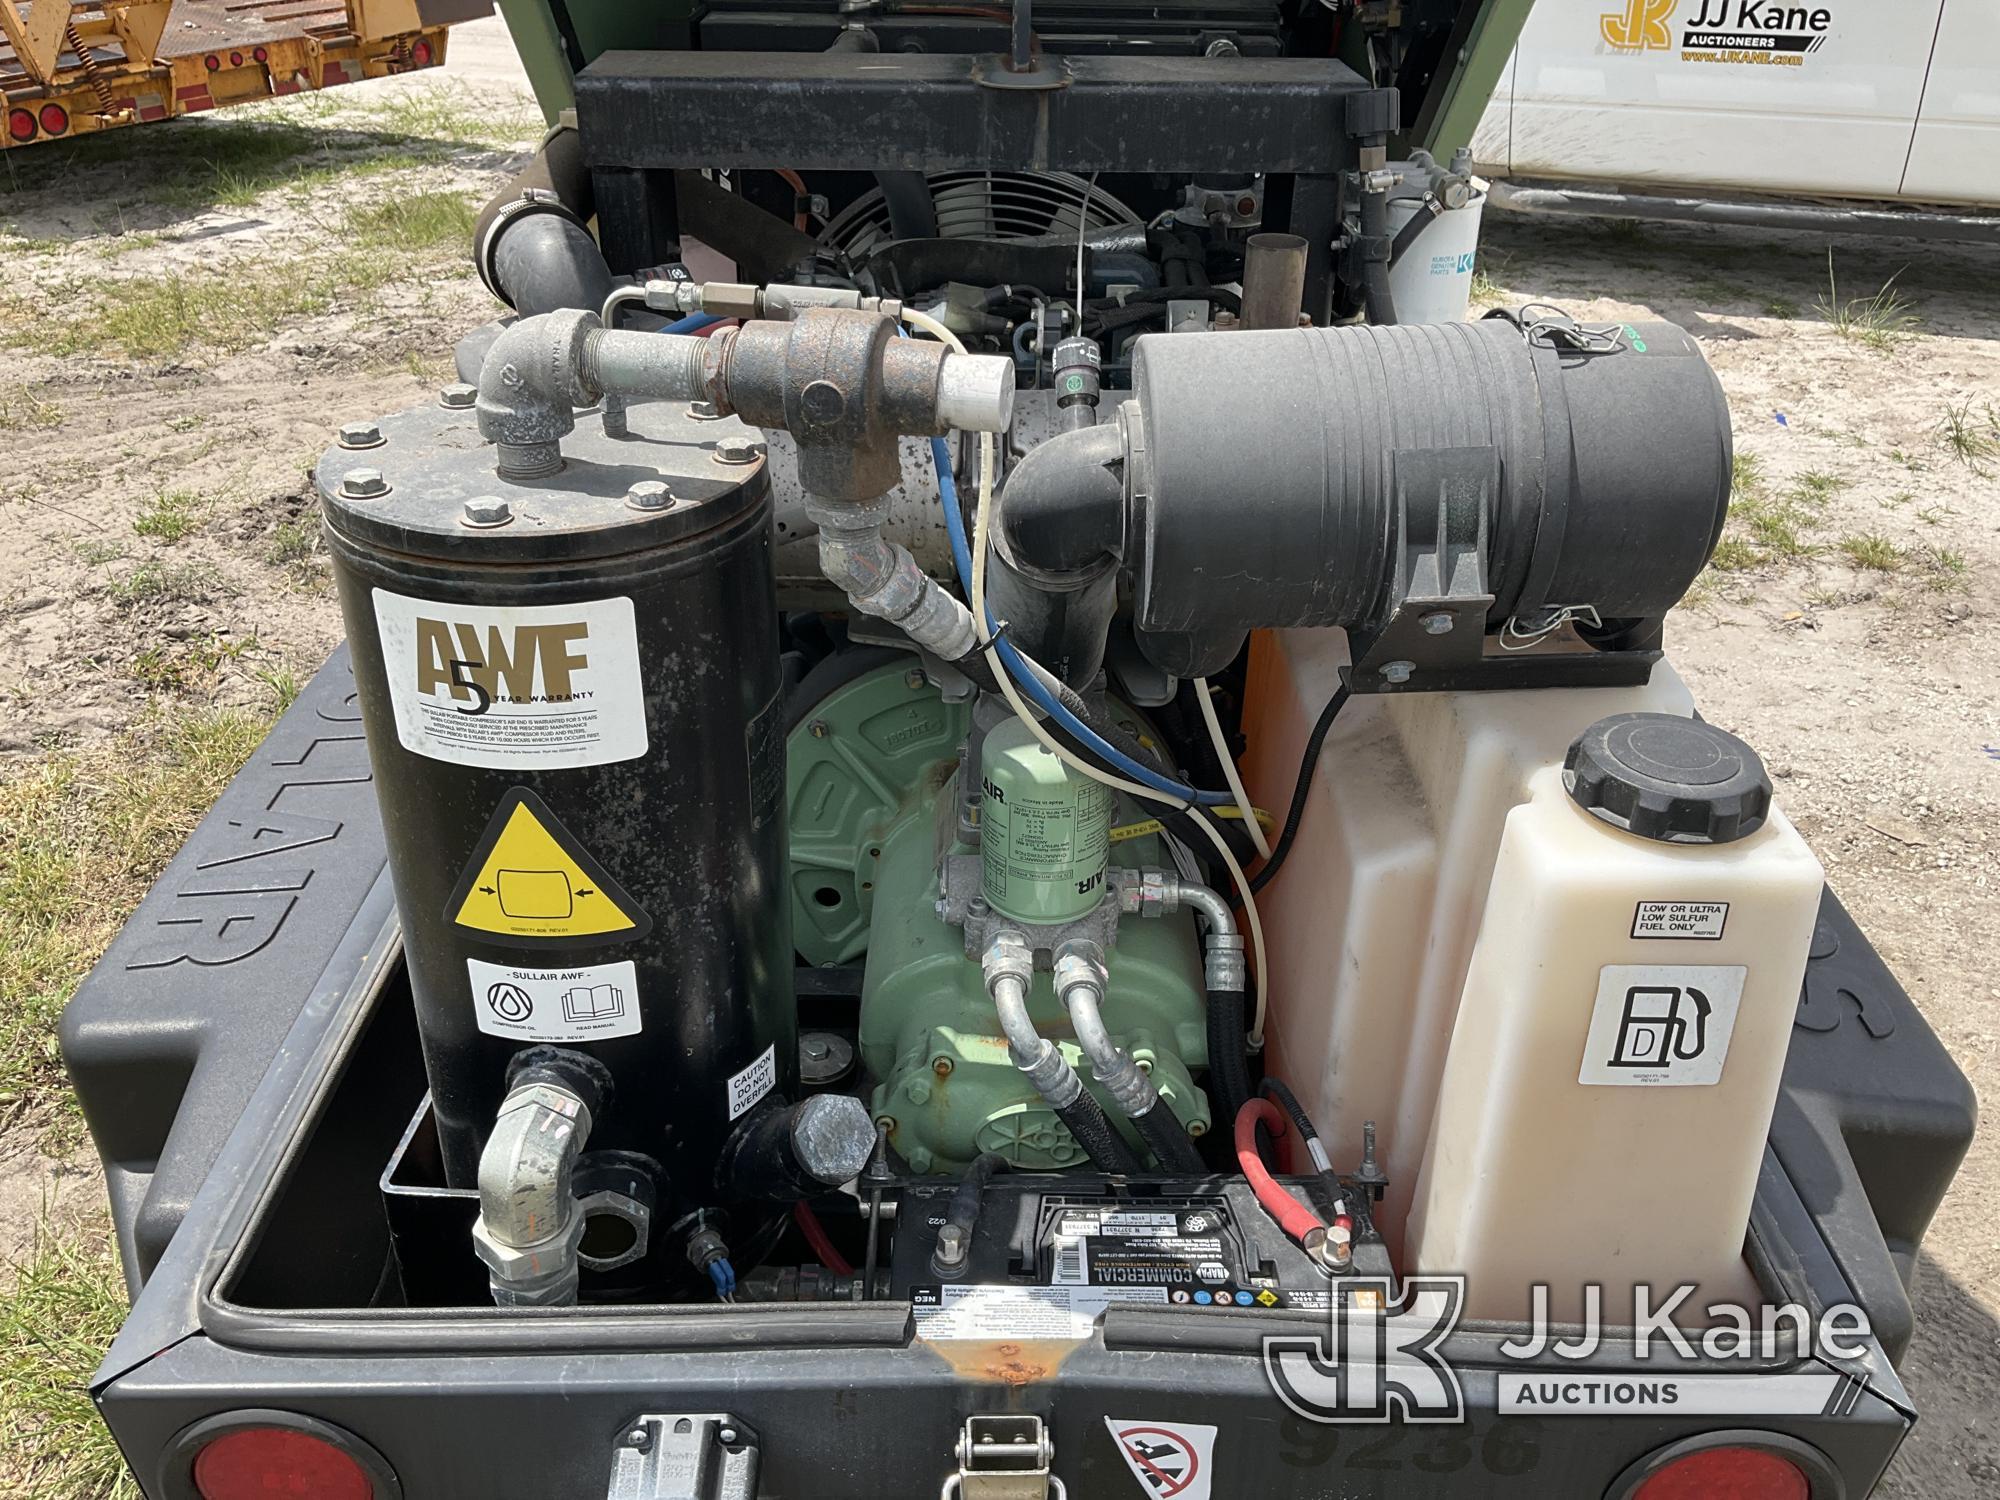 (Westlake, FL) 2014 Sullair 185DPQ Portable Air Compressor, trailer mtd No Title) (Towable, Not Runn